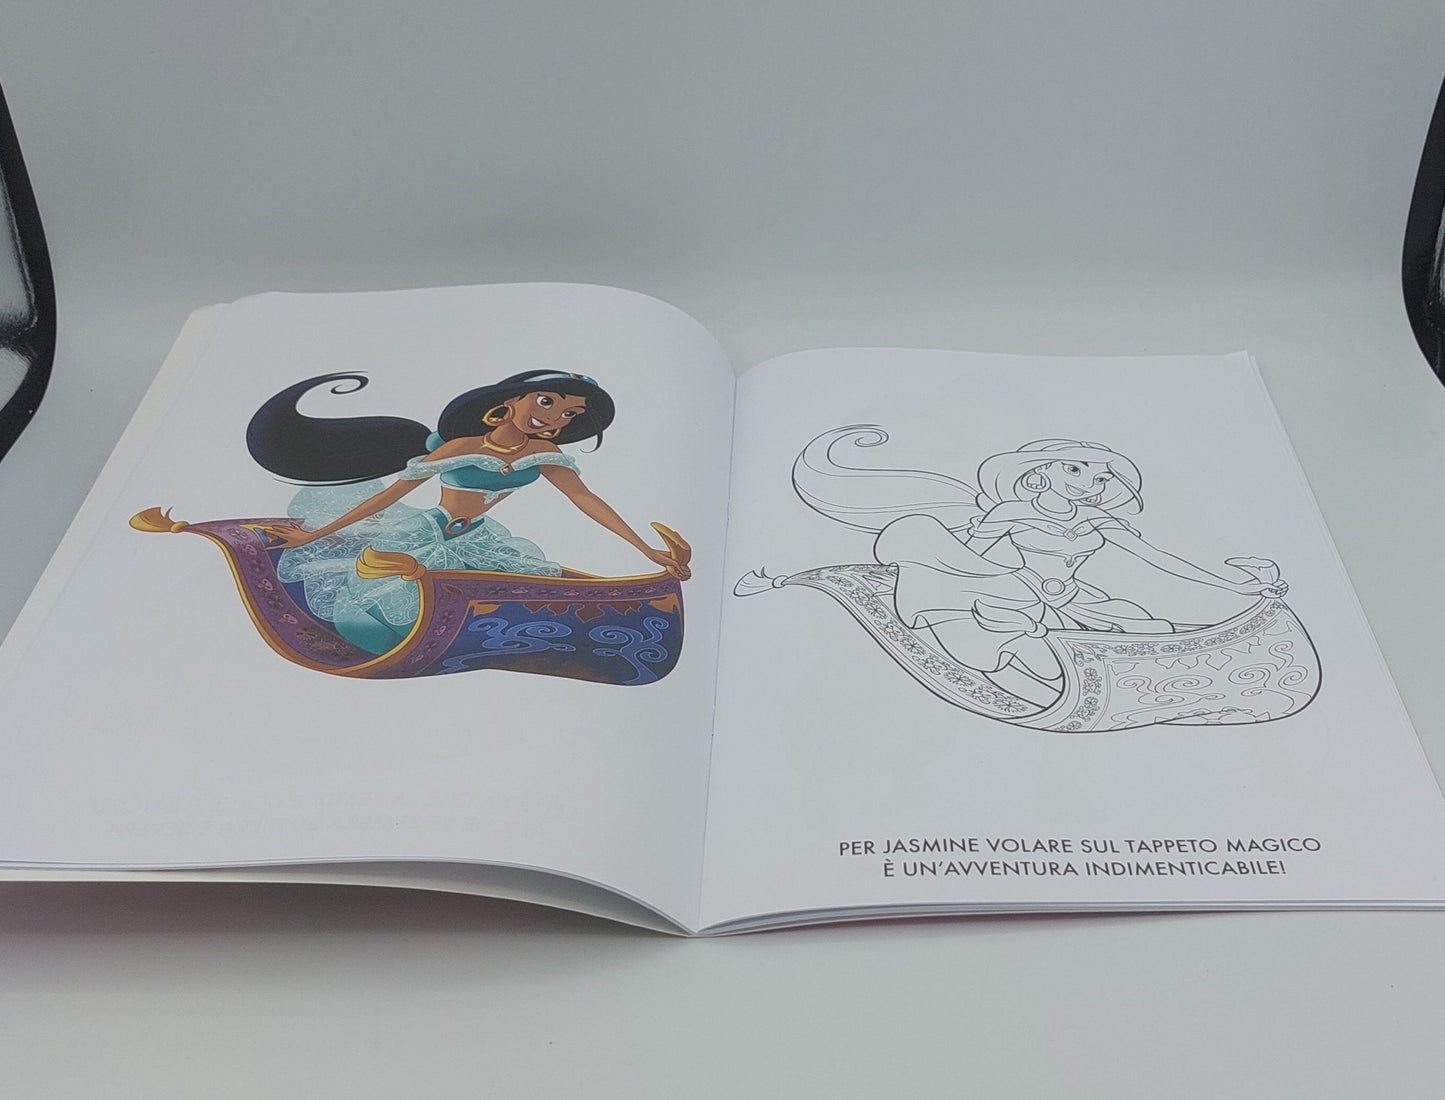 Primo album da colorare Disney Princess::Sogni da Principessa